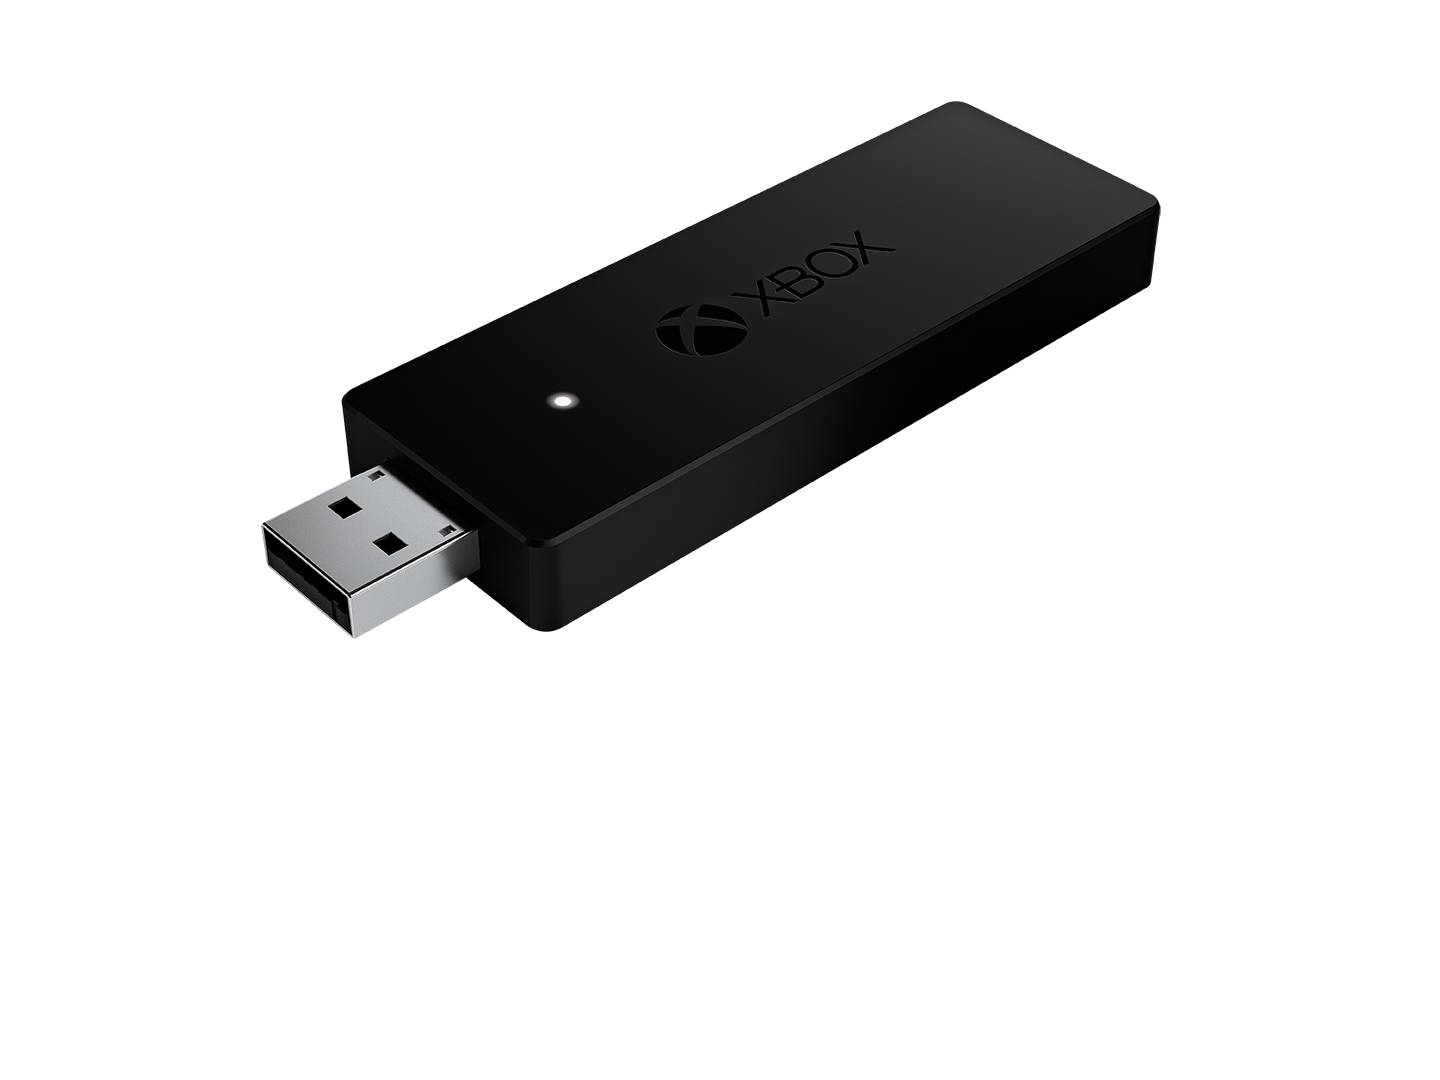 Pen Drive Xbox 360 500gb